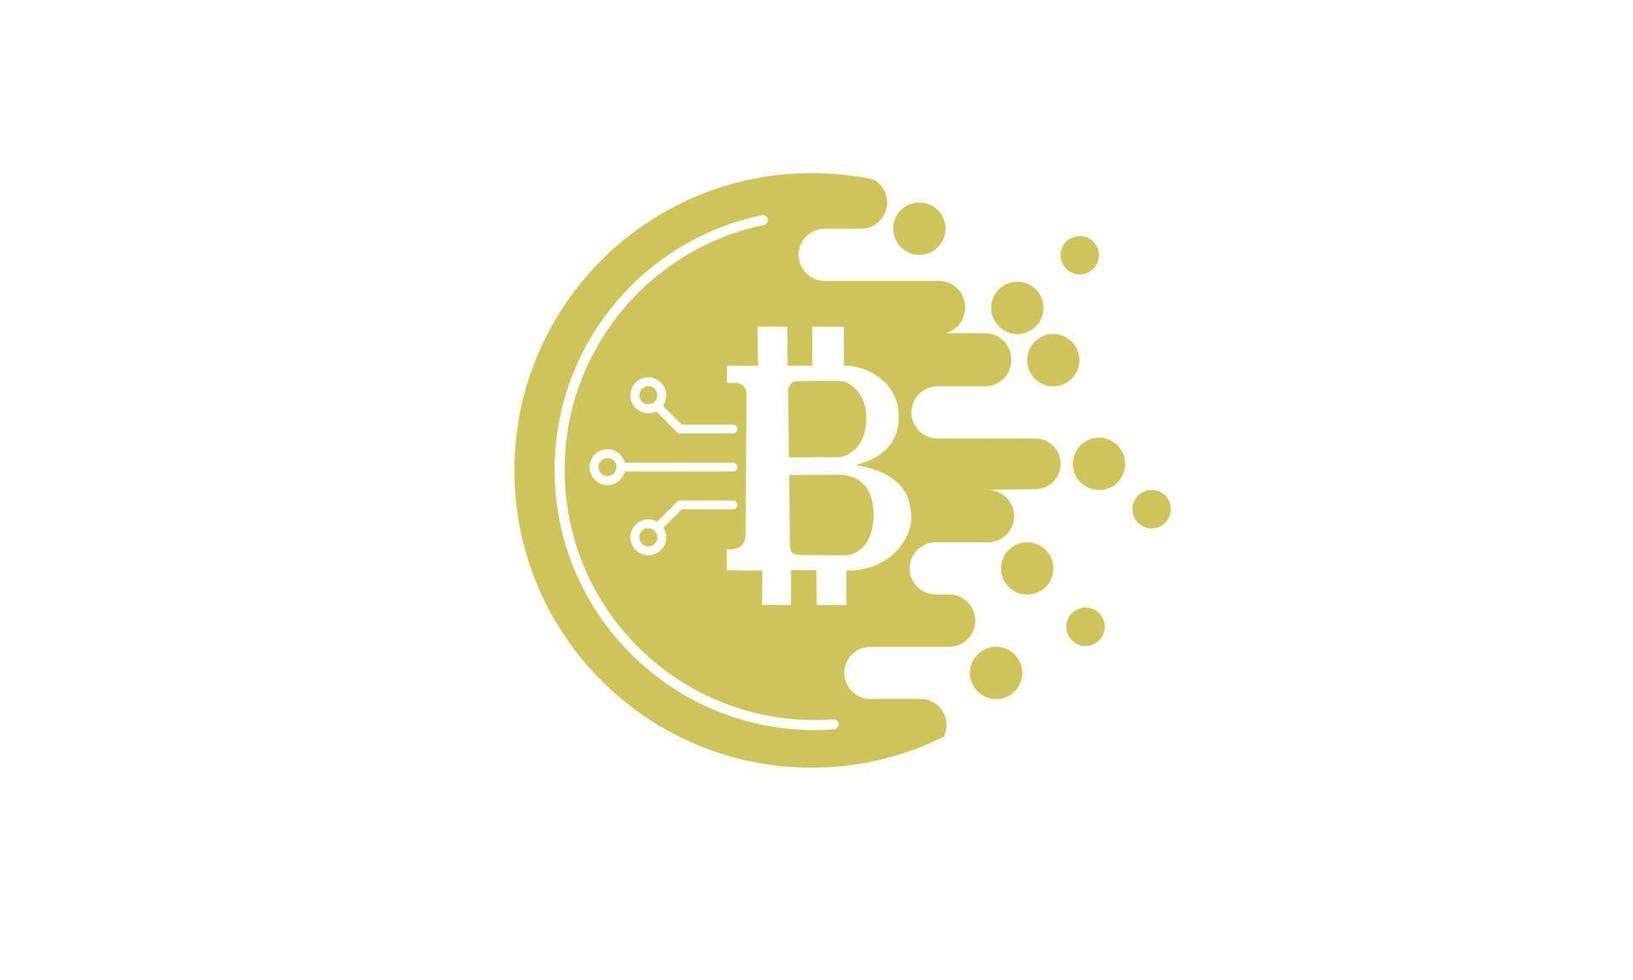 moneda de oro bit crypto moneda icono plano aislado sobre fondo blanco concepto de negocio en línea vector